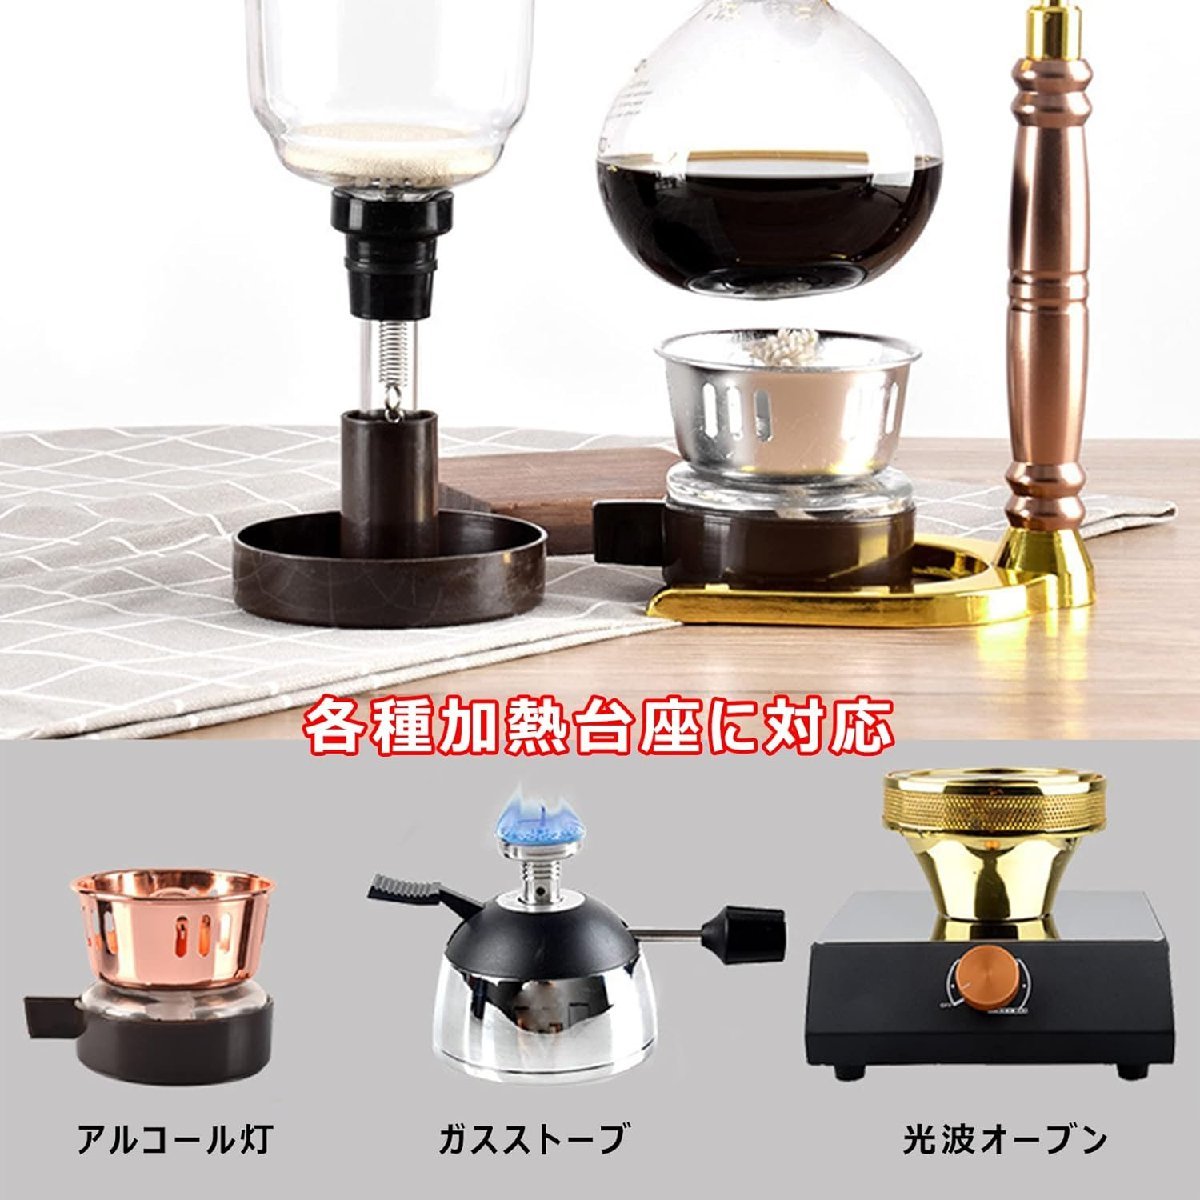 サイフォン式コーヒーメーカー 器具 5人用 コーヒー サイフォン式 耐久性耐熱 コーヒー加熱器具 480ml_画像6